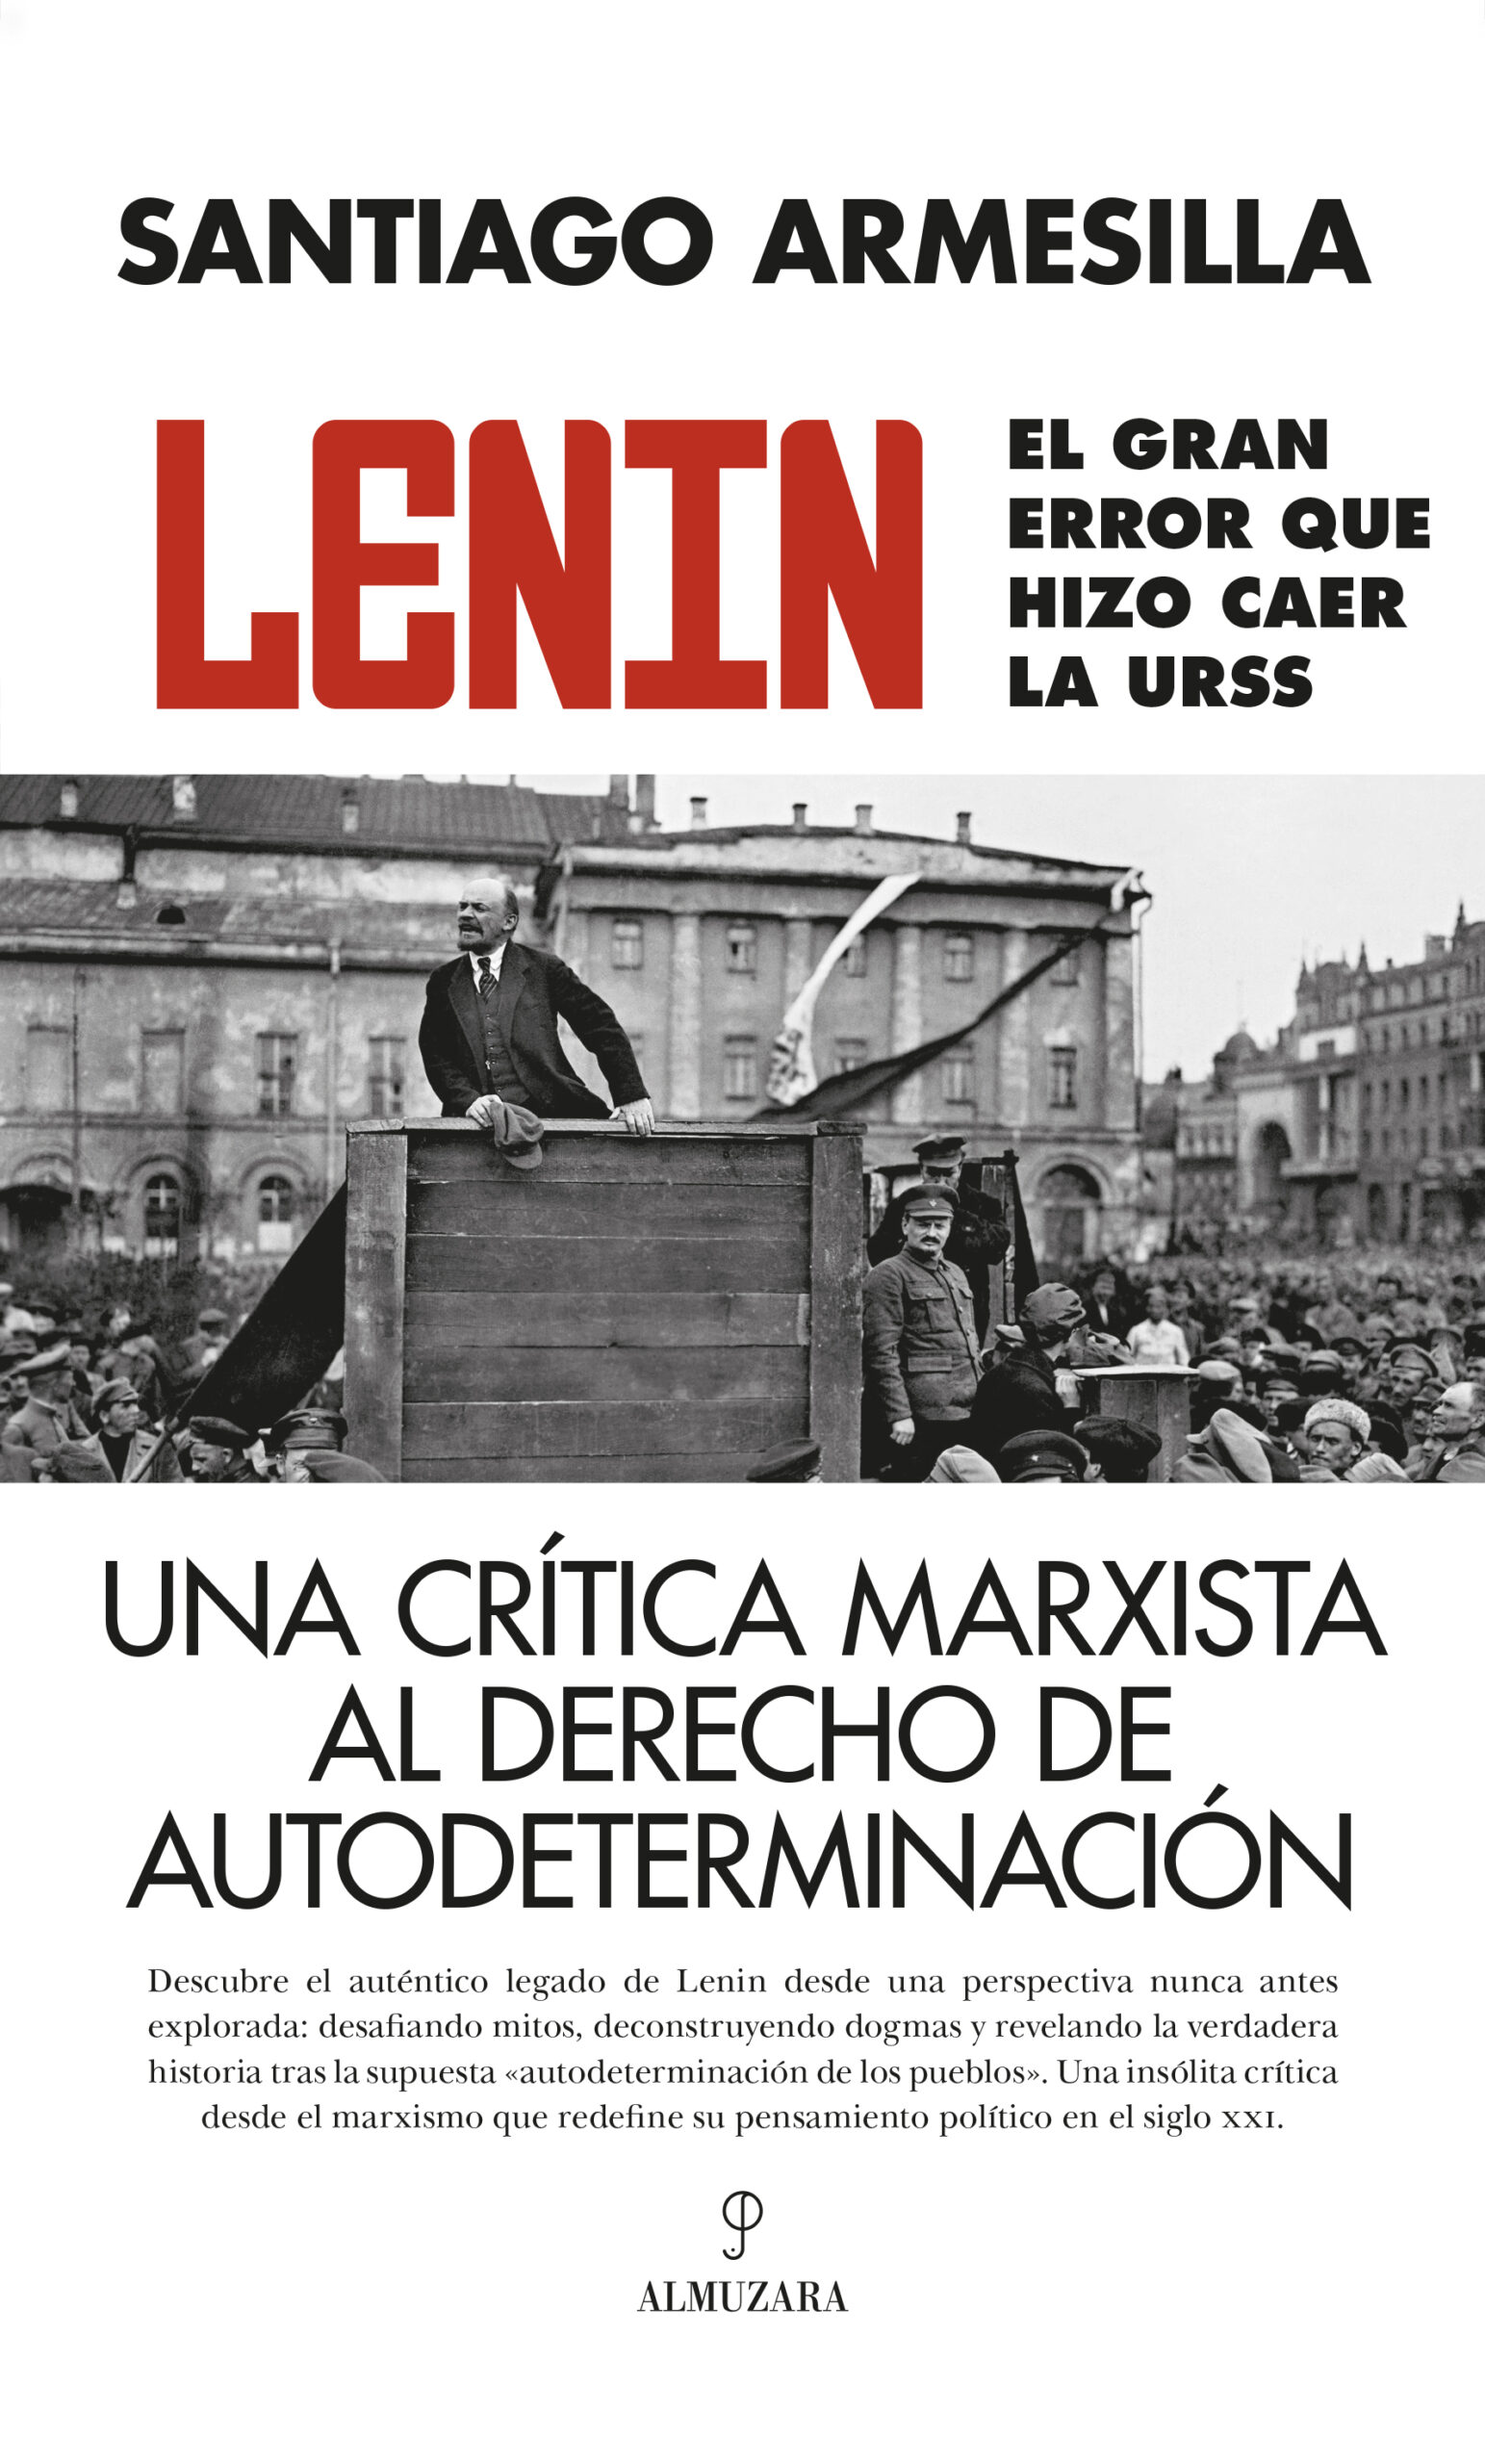 Lenin / S. ARMESILLA / 9788410520059